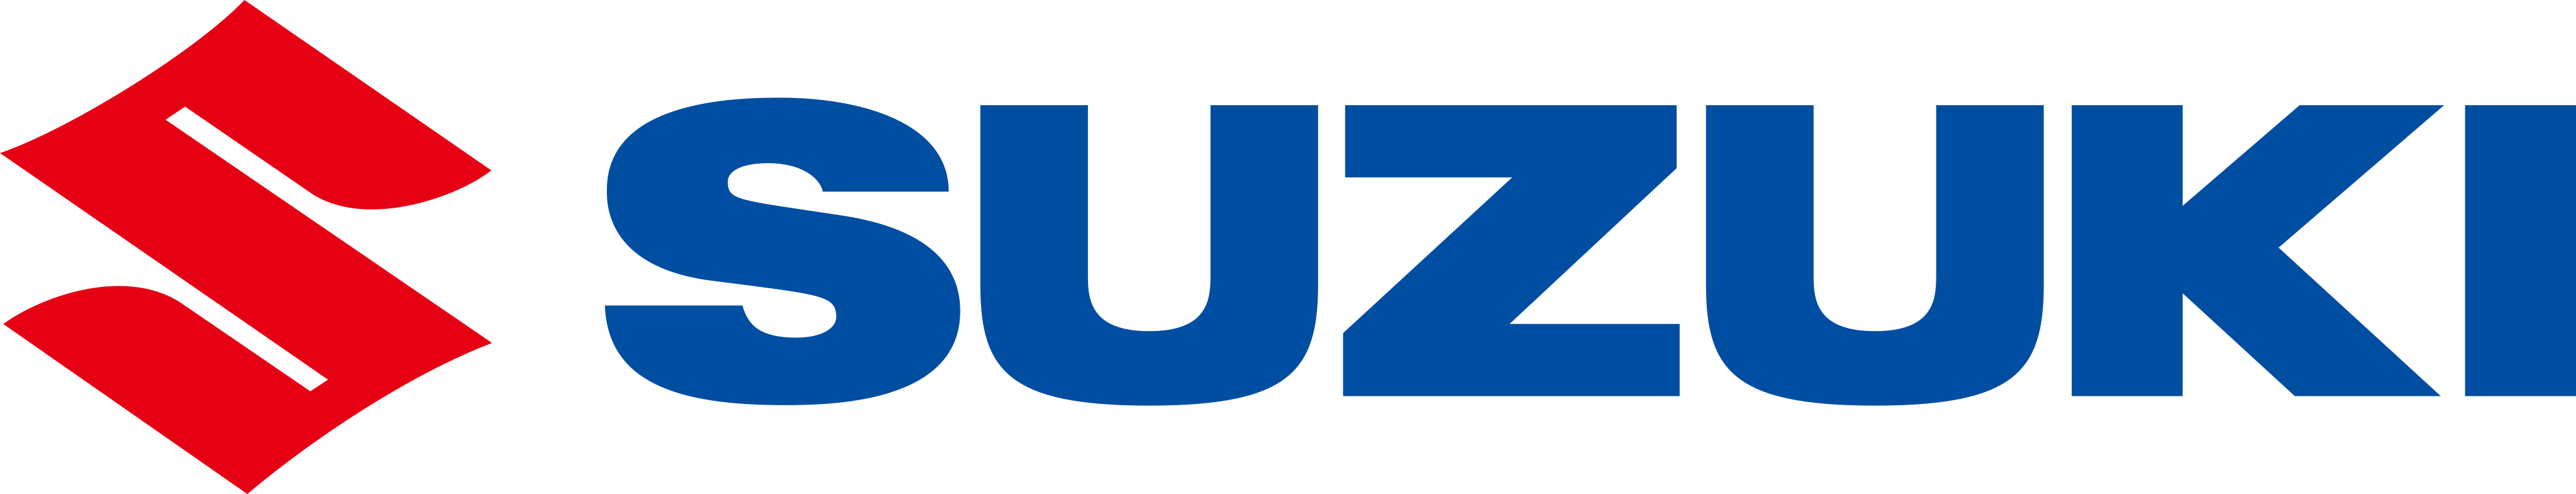 Suzuki Logo Transparent Images